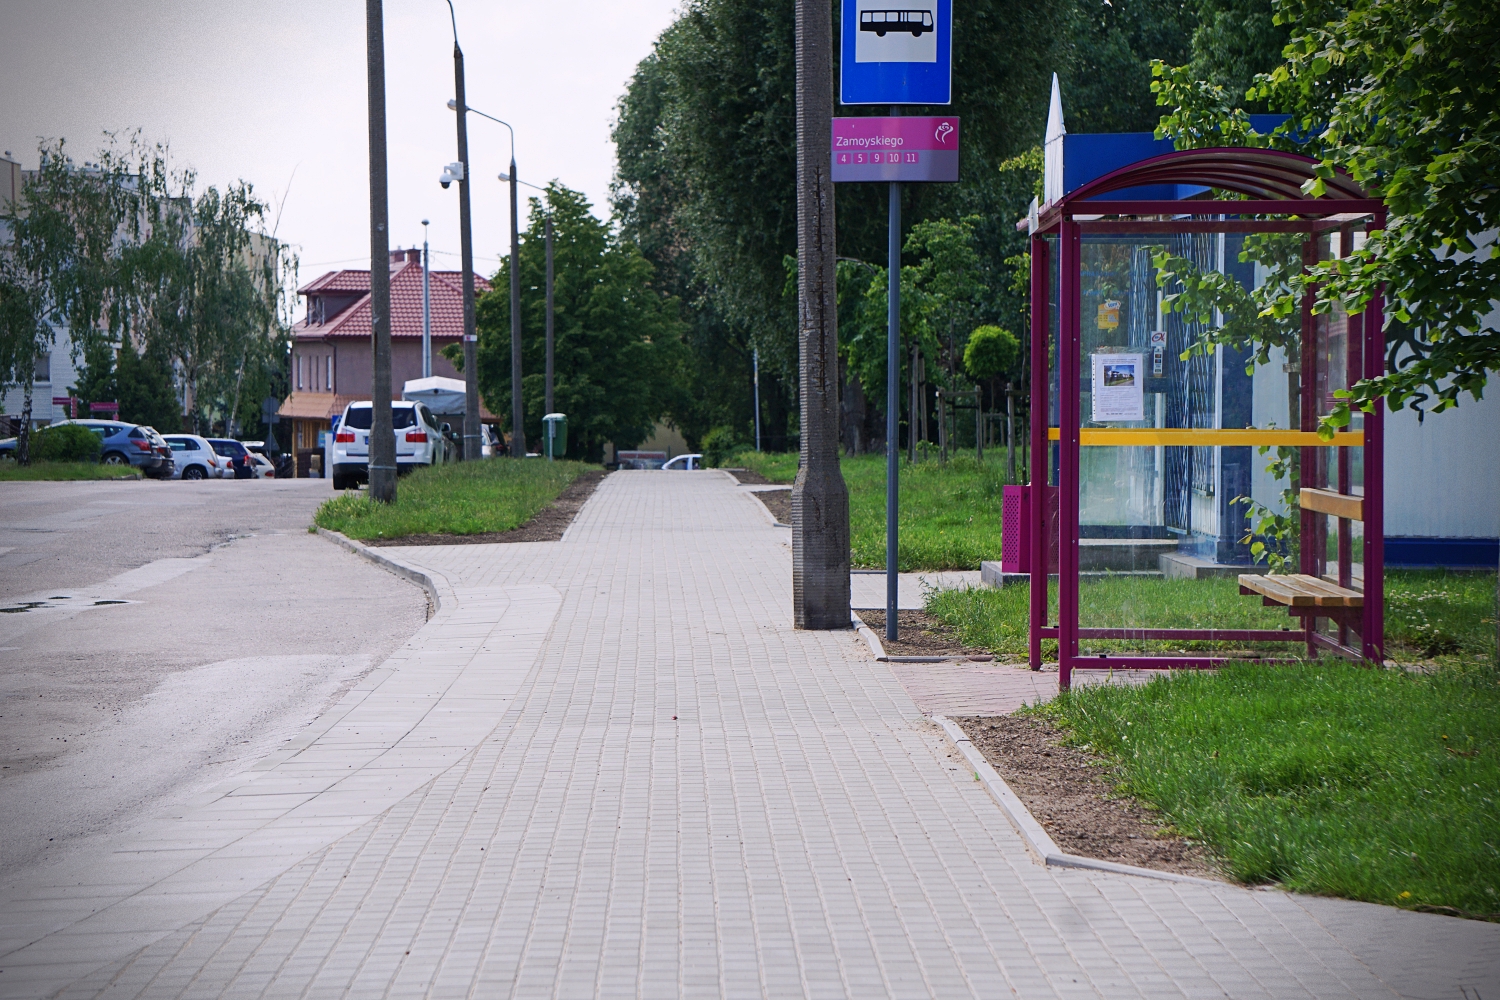 Chodnik ulica Zamoyskiego